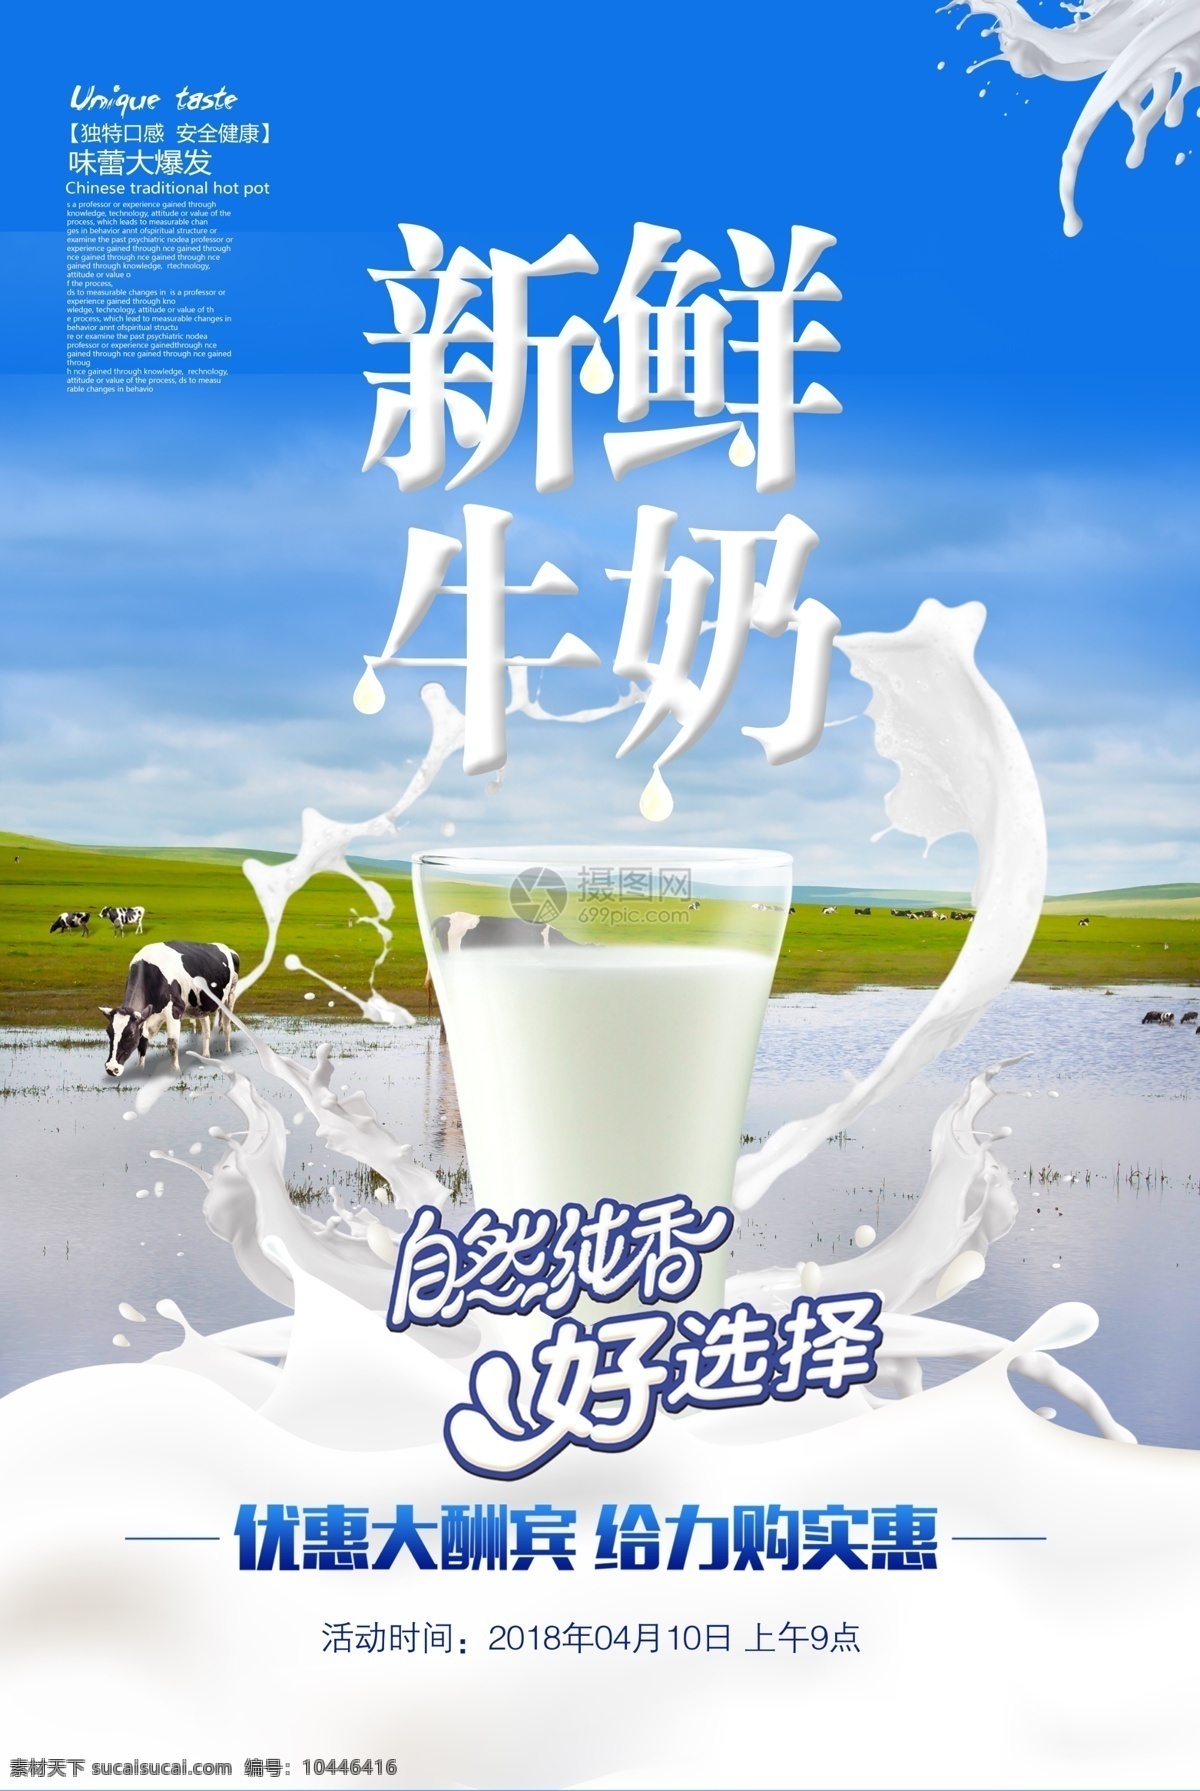 新鲜 牛奶 优惠 购 新鲜牛奶 自然 纯香 大酬宾 牛奶海报 牛奶广告 光明牛奶 伊利牛奶 鲜奶 纯牛奶 酸奶 奶牛 草原 牧场 乳制品 餐饮 饮品